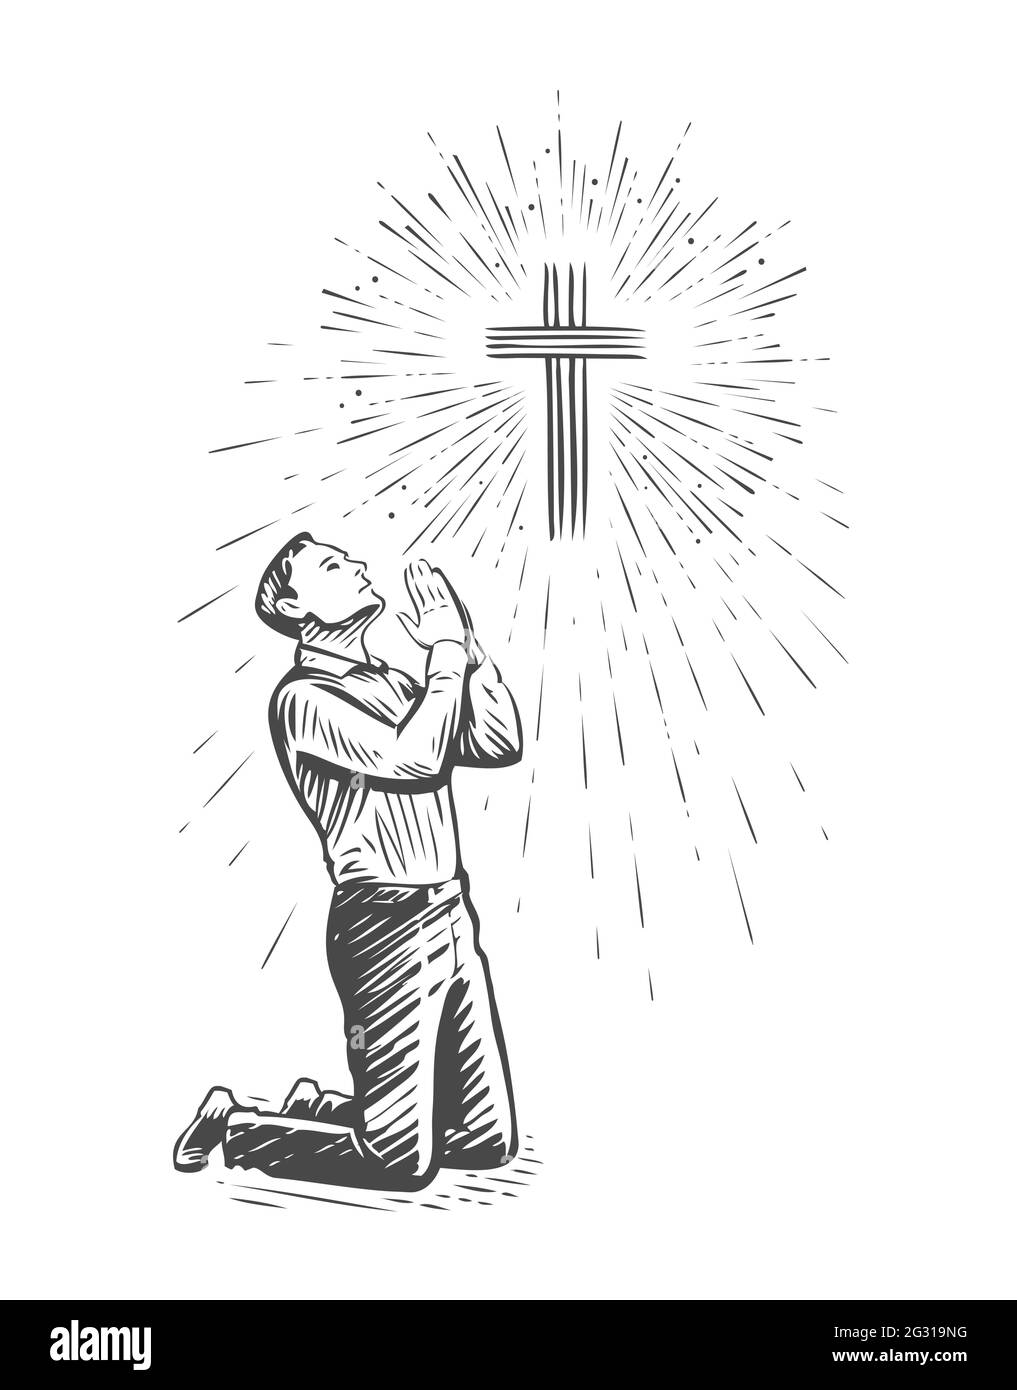 Disegno di preghiera umana con le mani piegate nel culto. Illustrazione vettoriale disegnata a mano Illustrazione Vettoriale